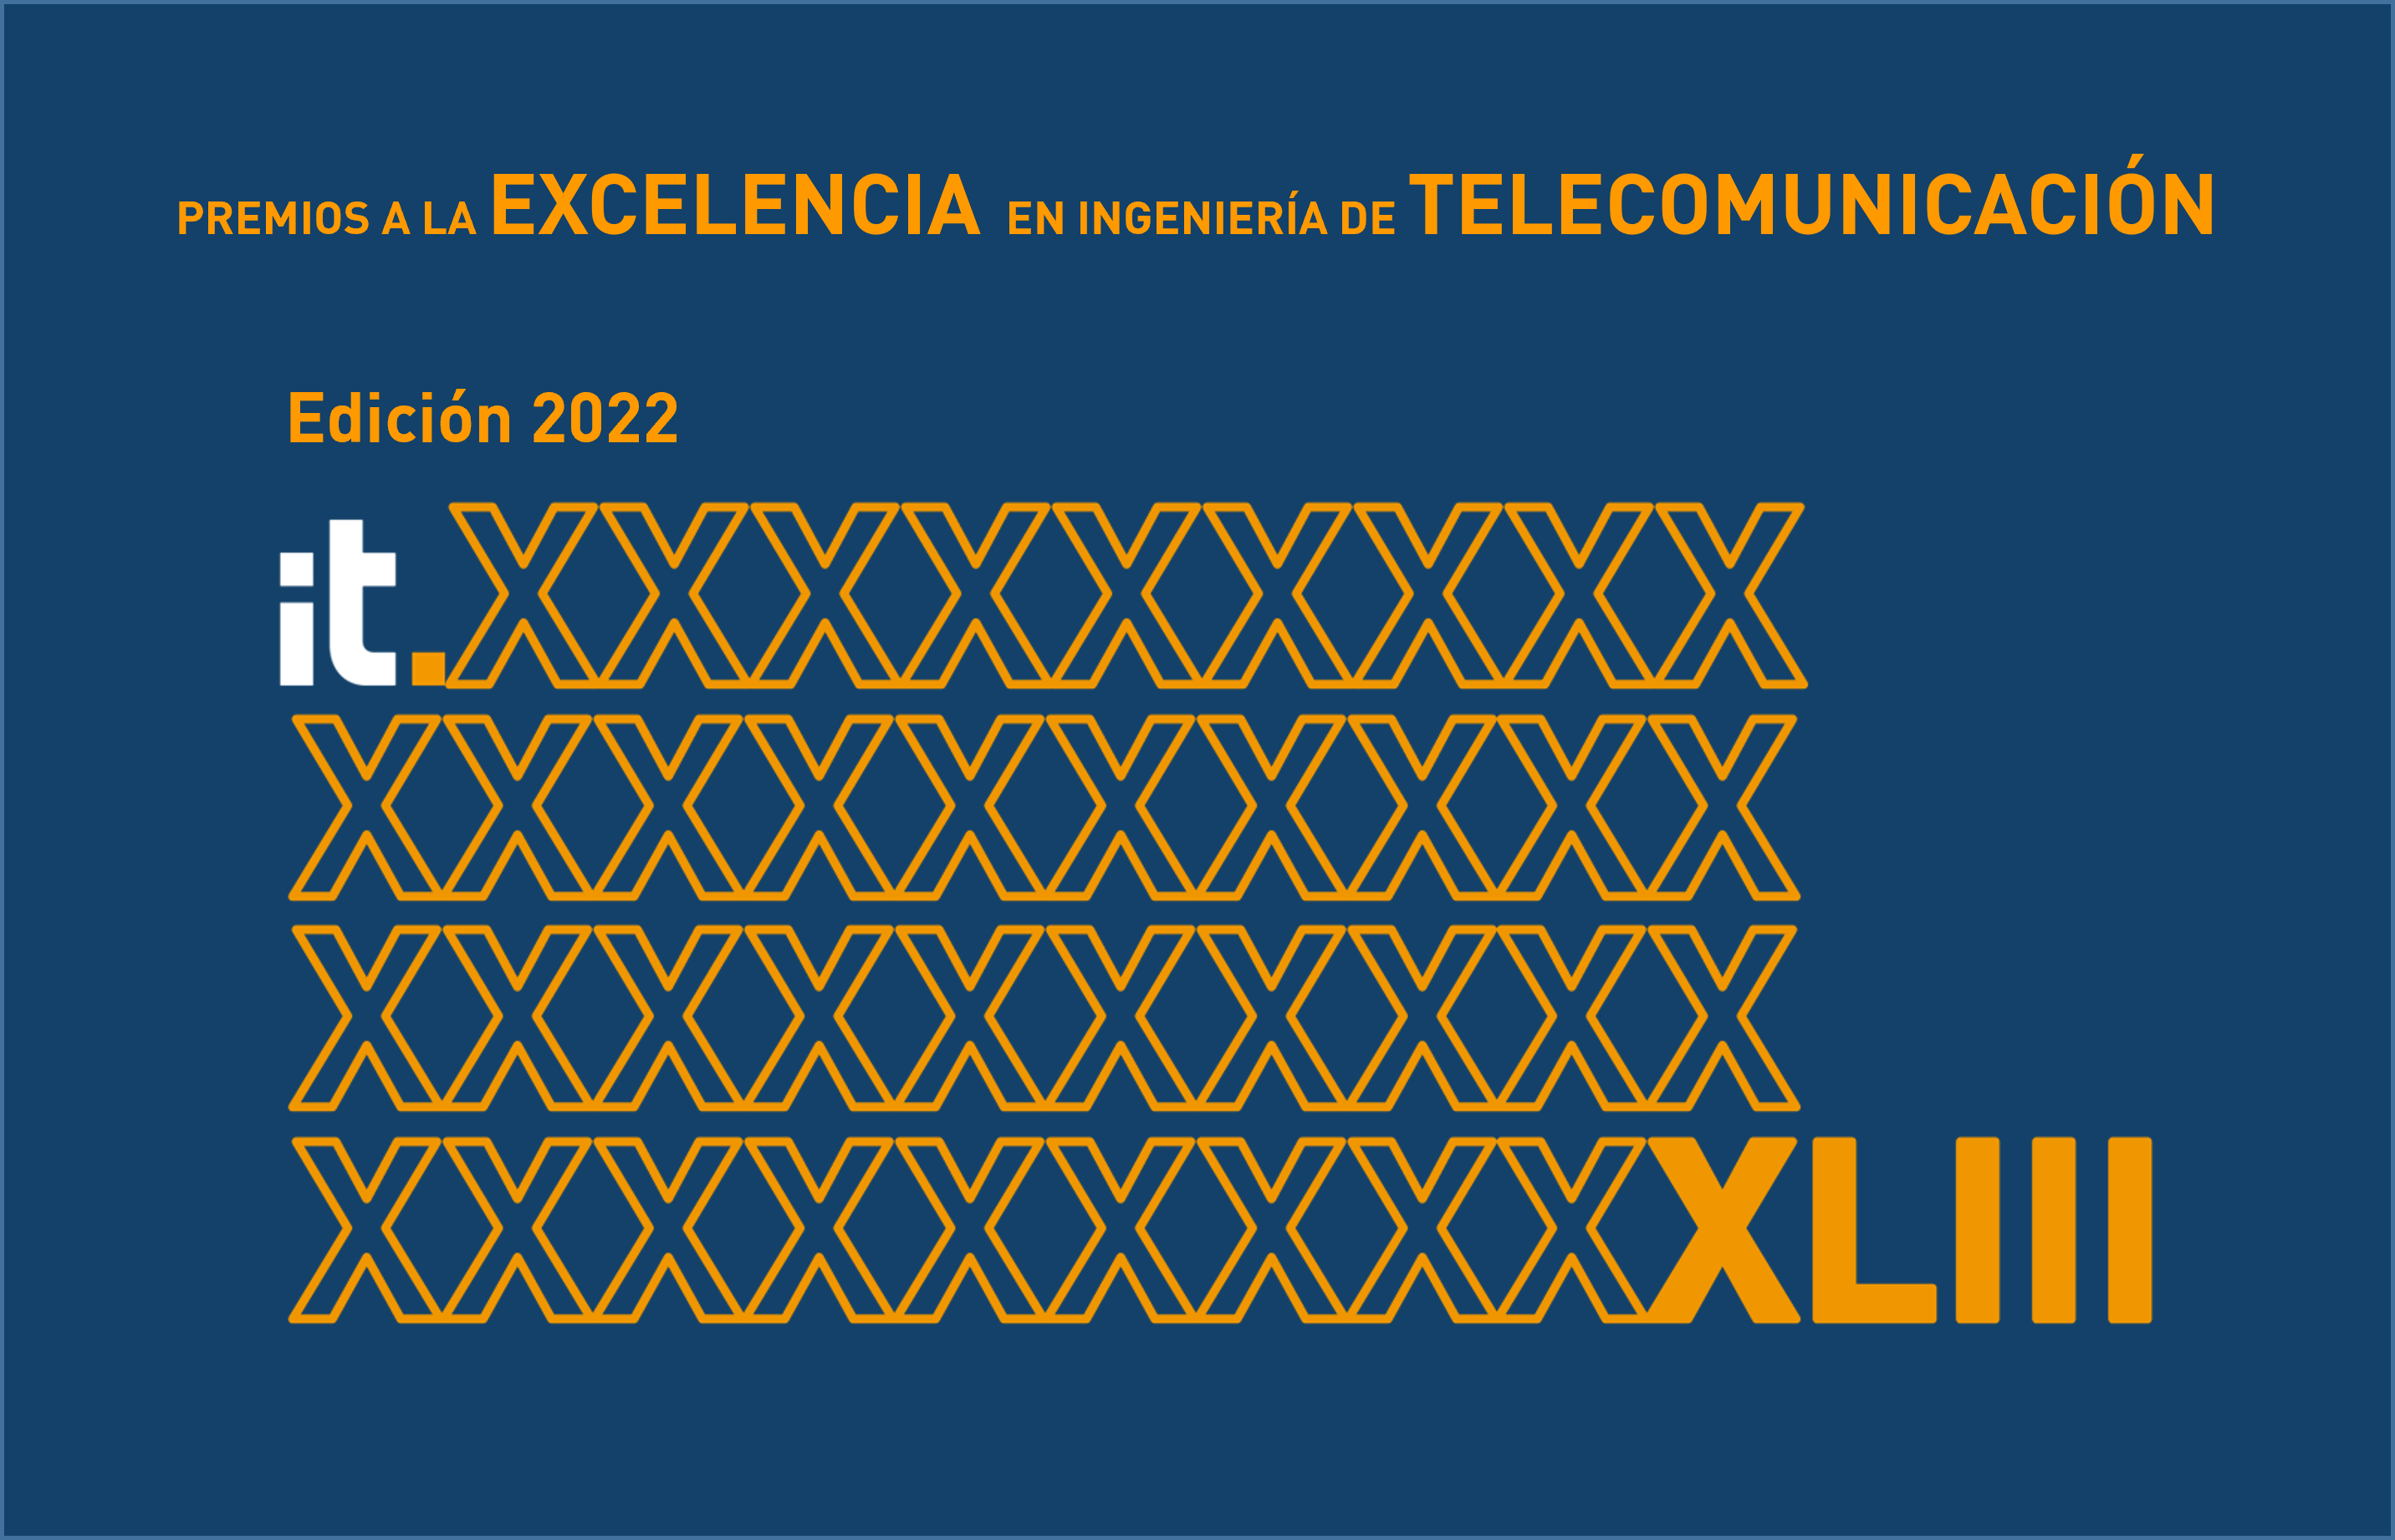  Premios a la Excelencia en Ingeniería de Telecomunicación para los mejores trabajos 2022